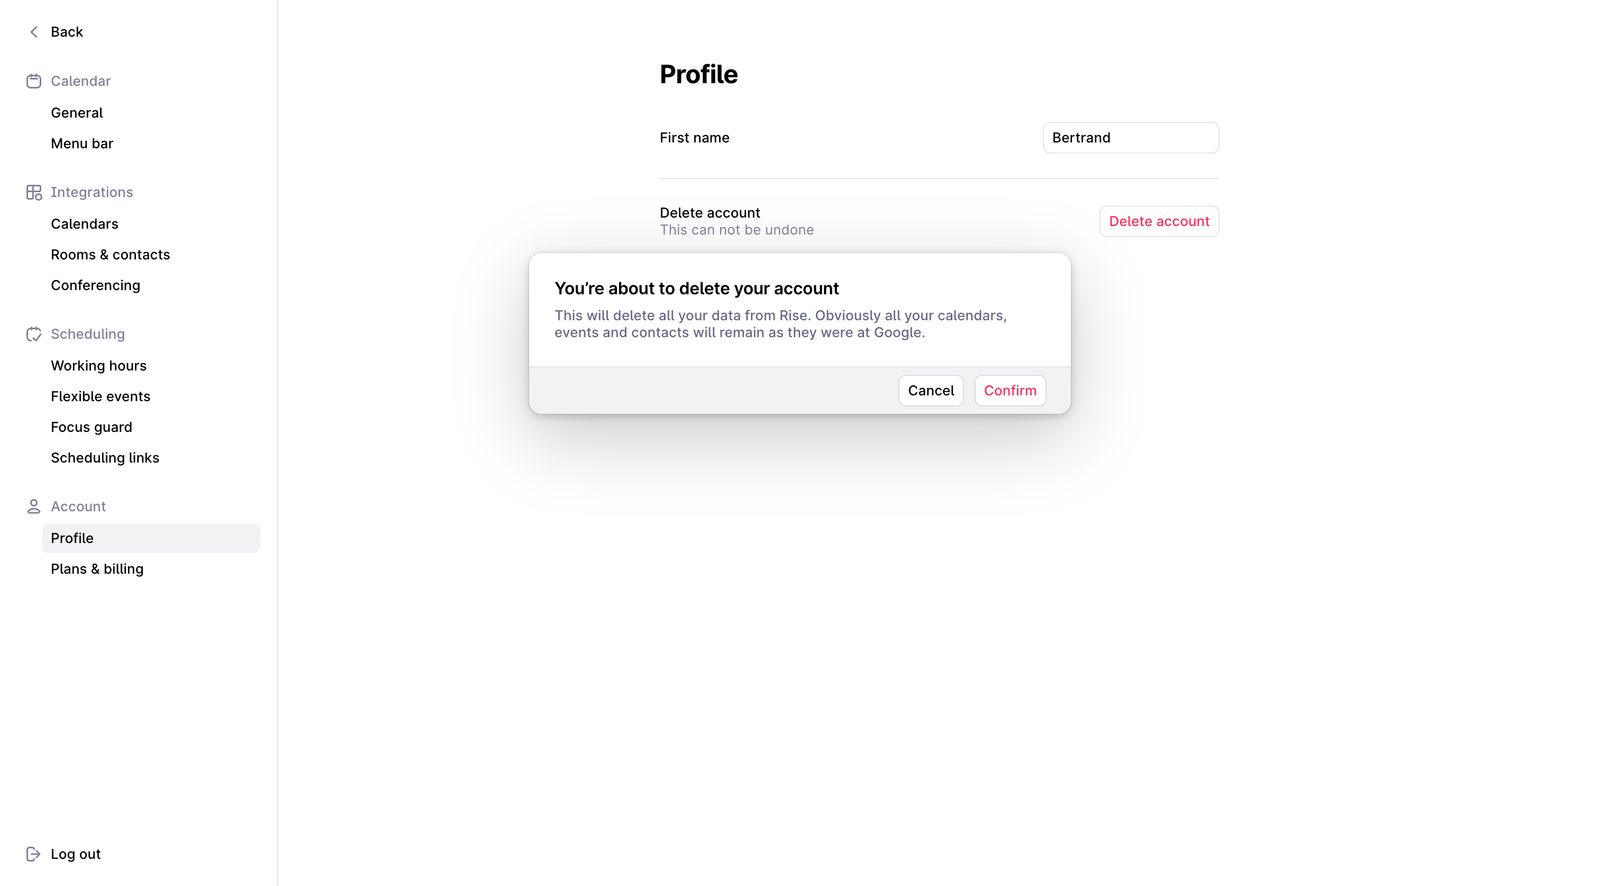 /articles/delete-account-inspiration/delete-account-design-example-7.jpg)_Delete account example from Rise